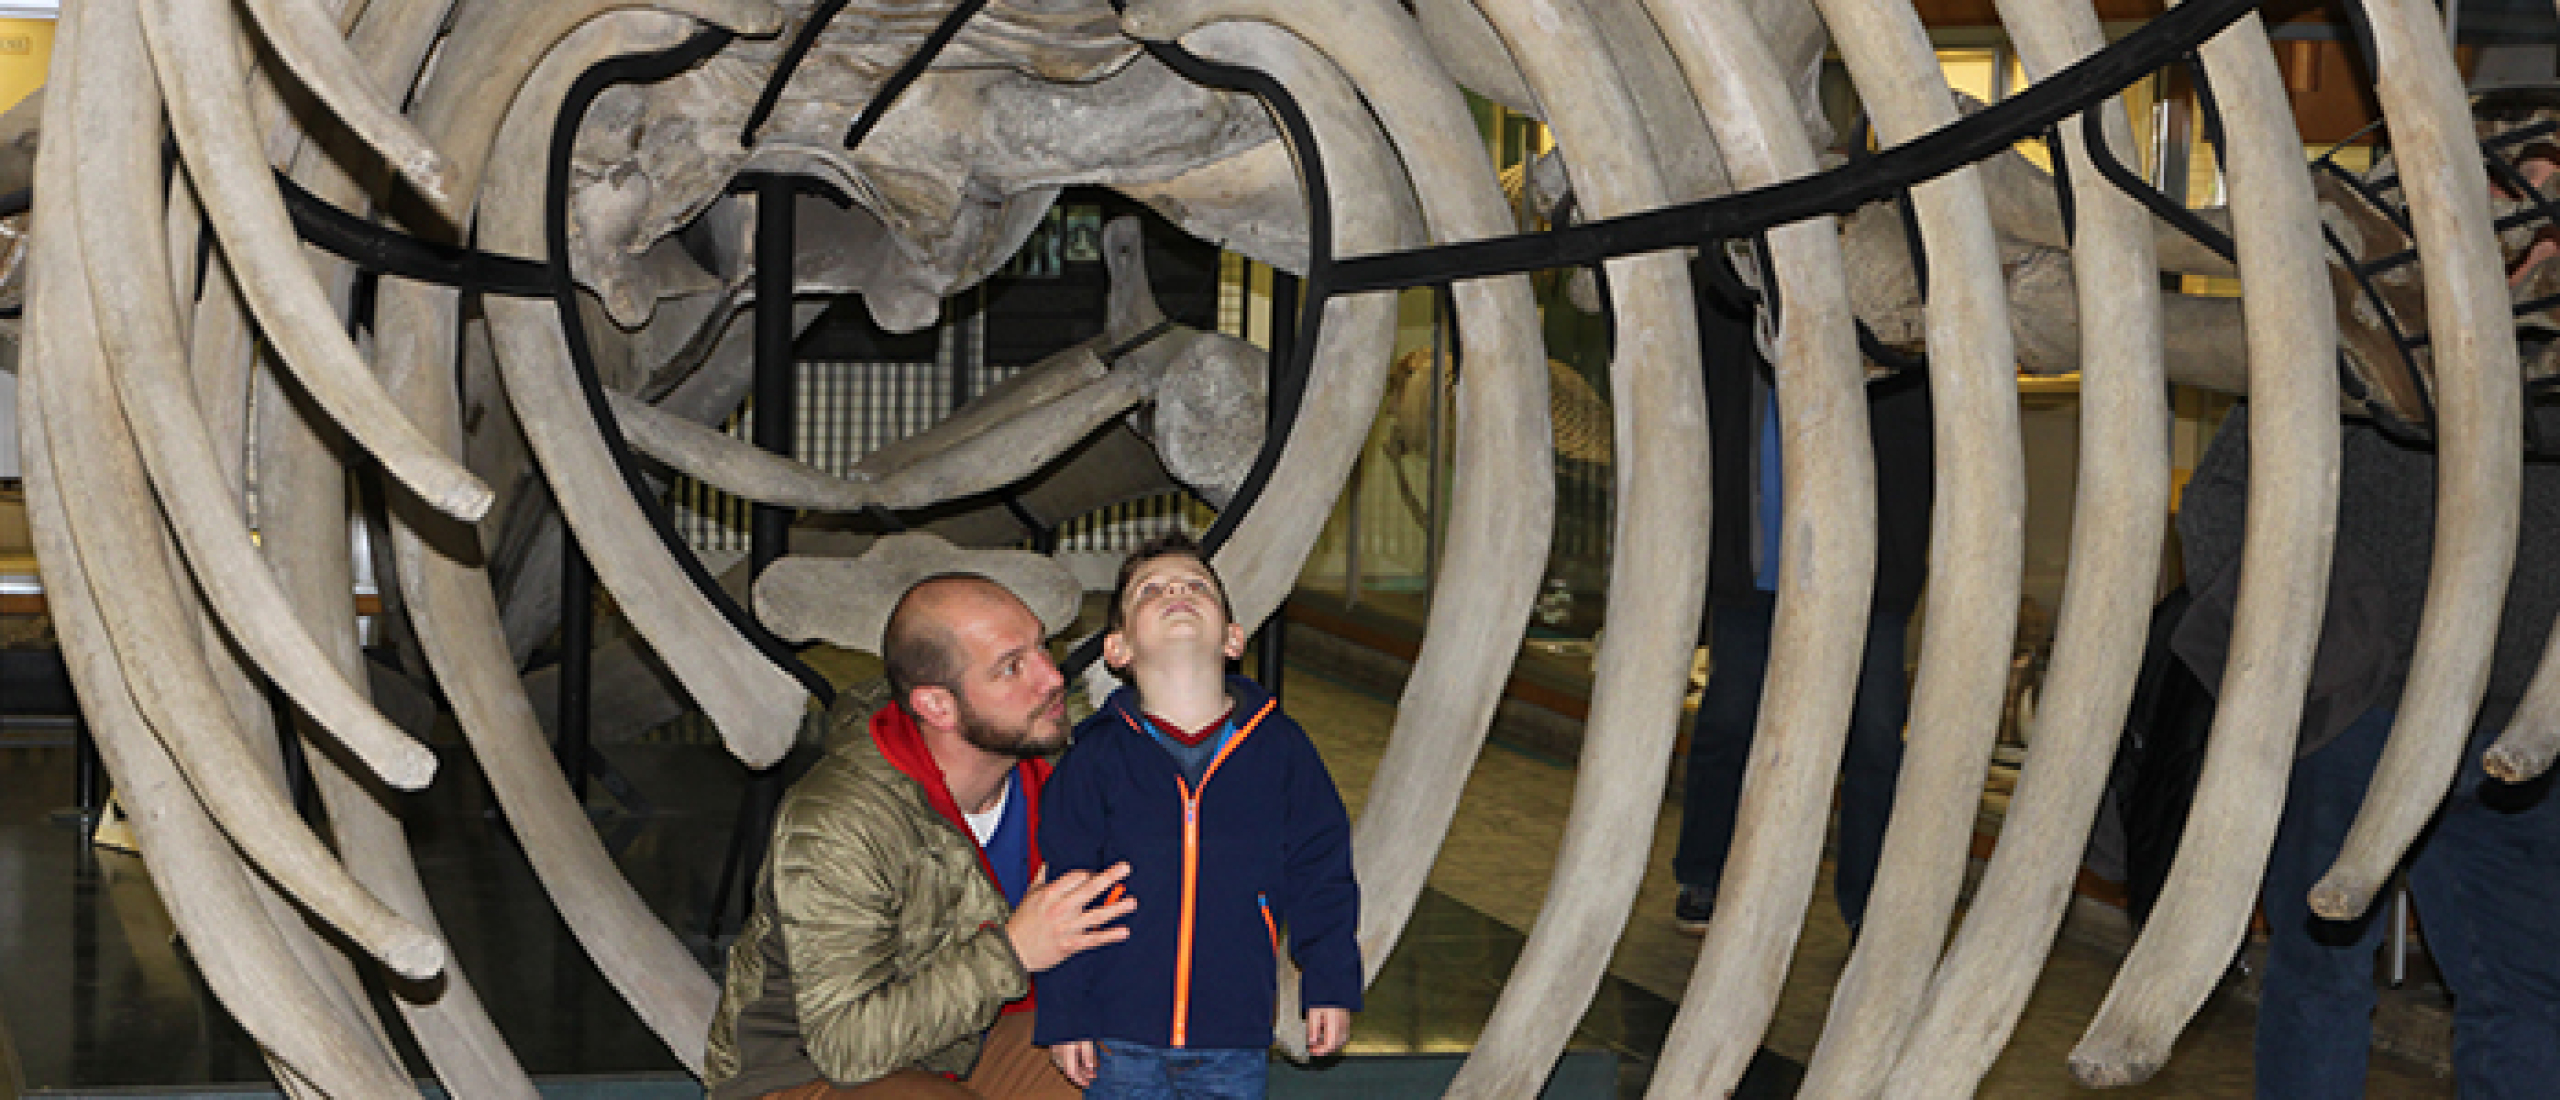 Aquarium-Muséum Luik, kennismaken met dieren uit de hele wereld